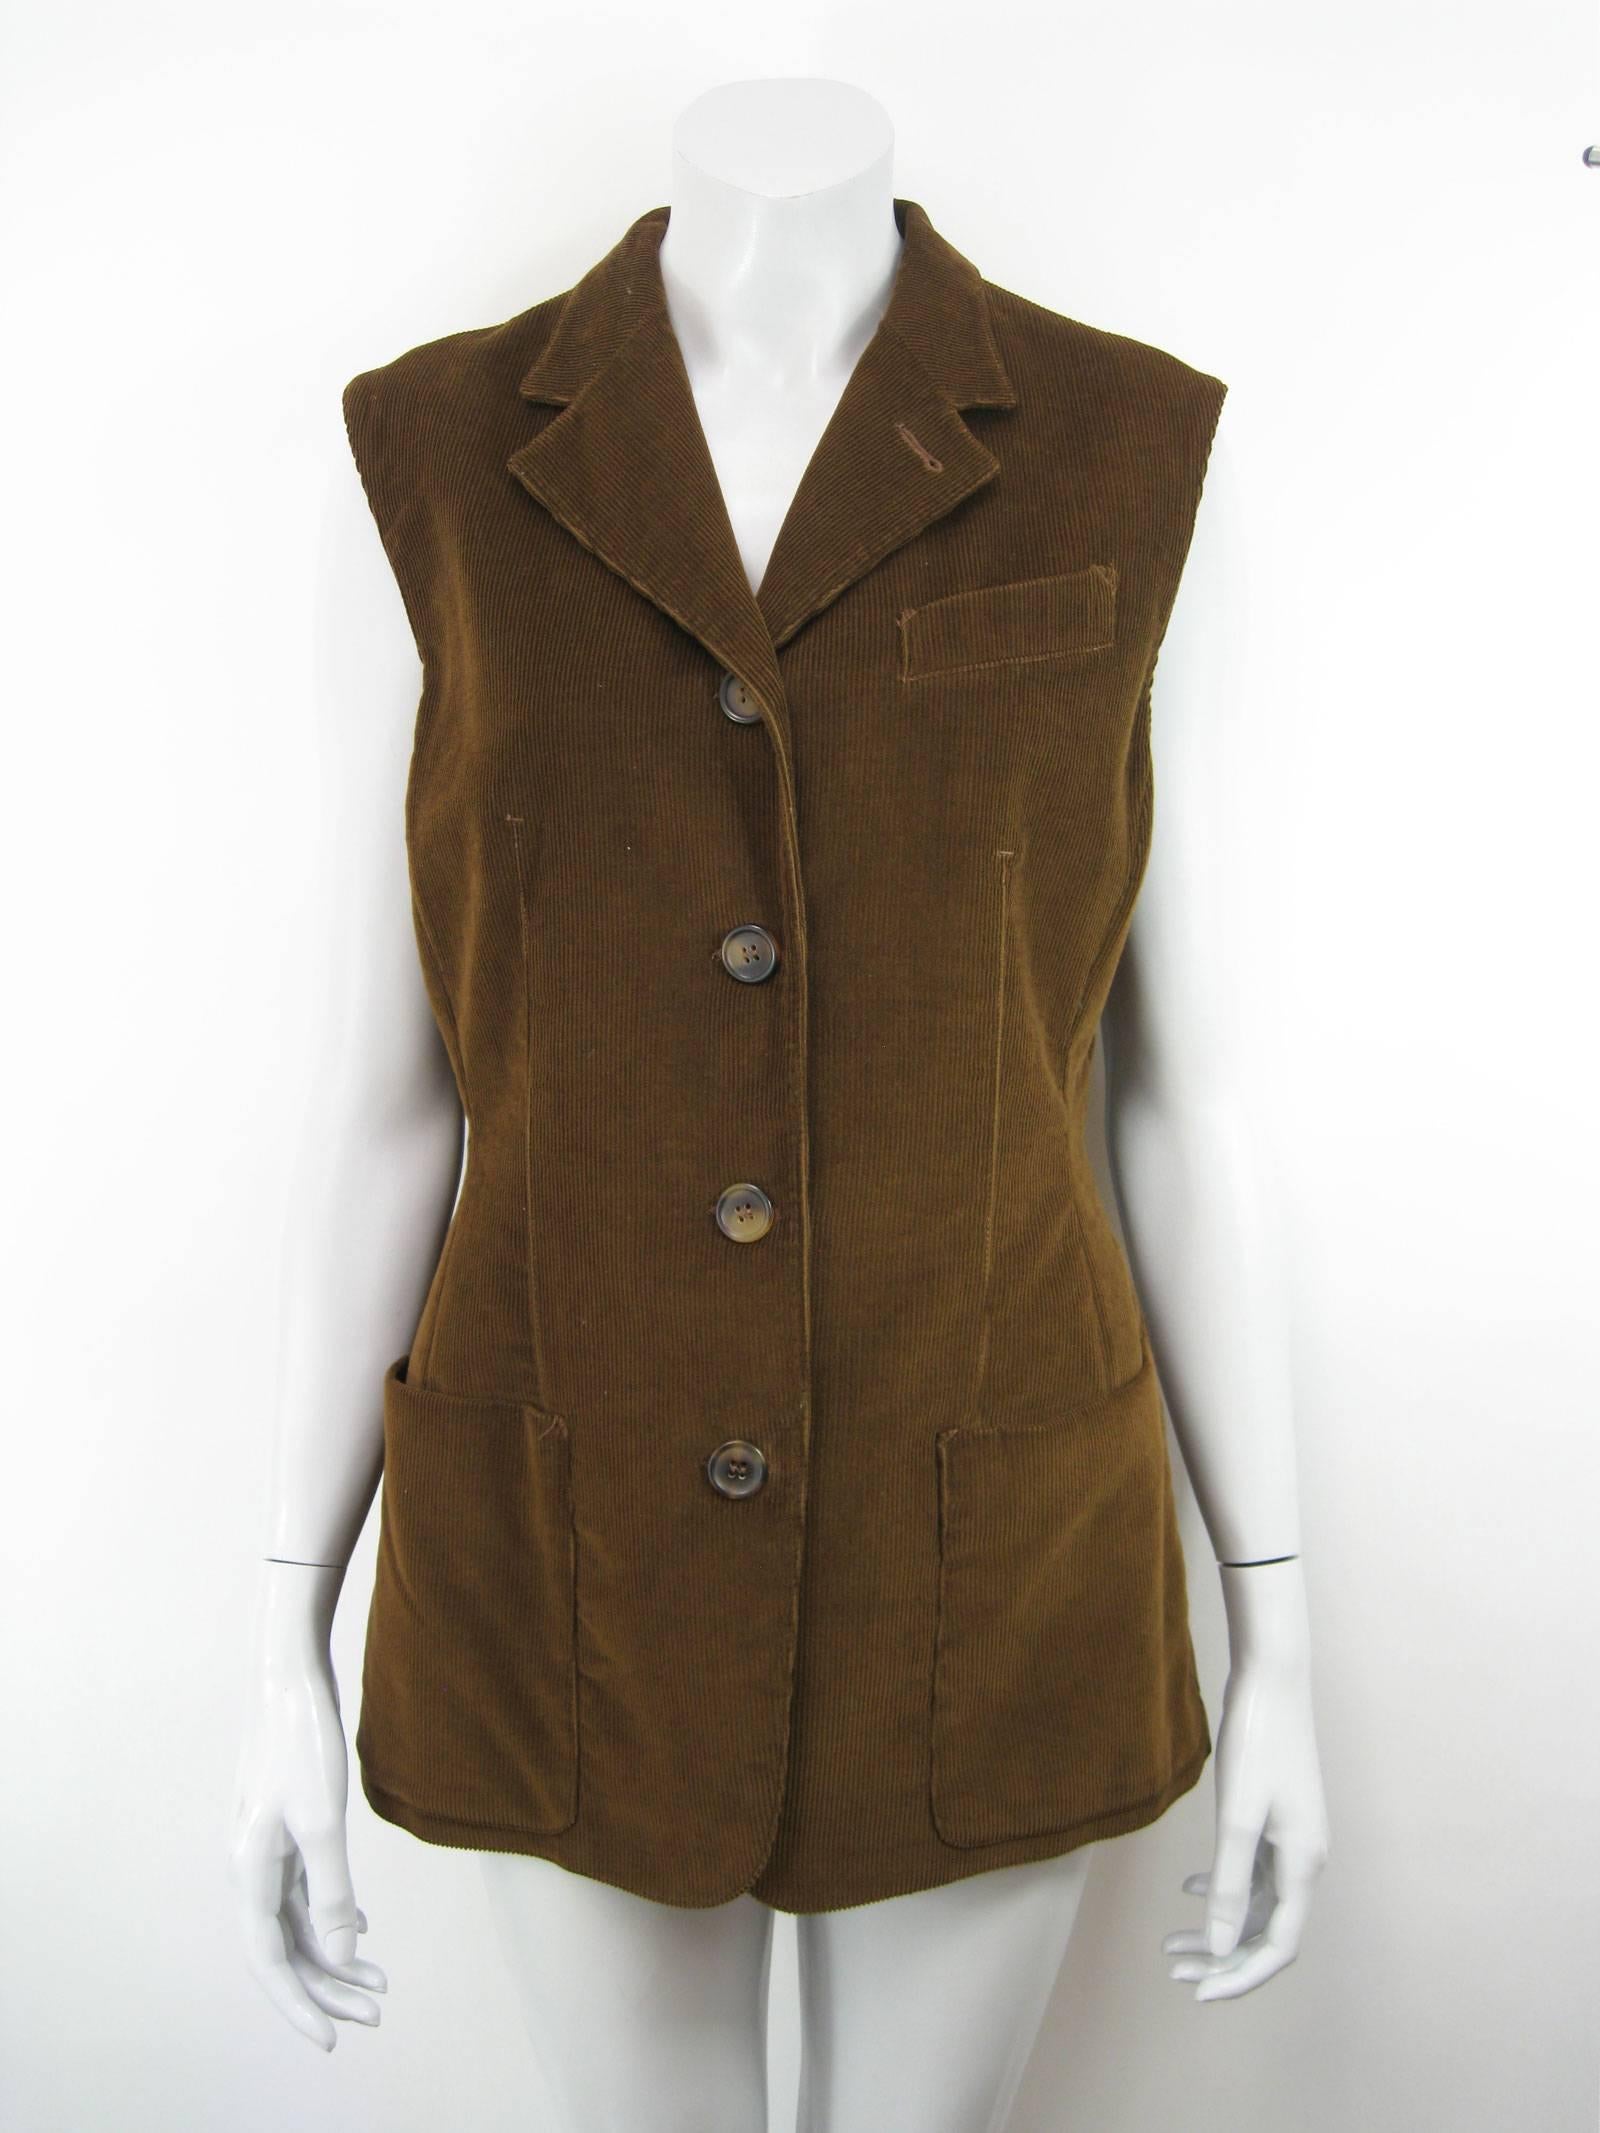 Gaultier Junior Brown Corduroy 2 Piece Mock Jacket Shirt and Vest 2